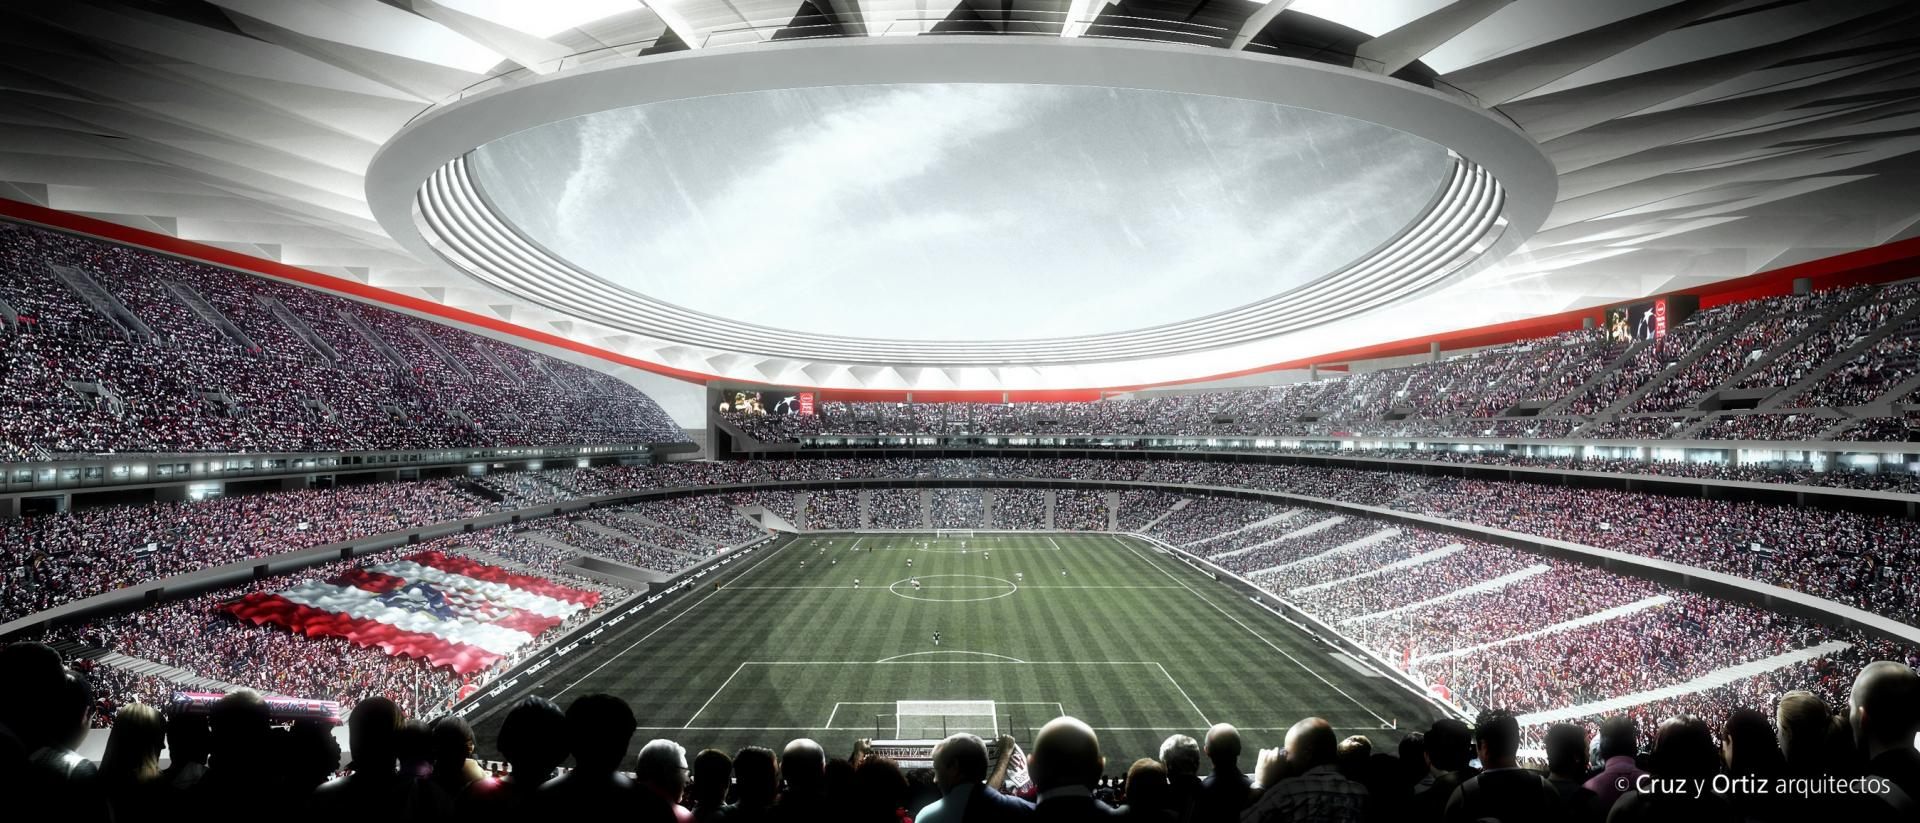 Design Wanda Metropolitano Stadiumdb